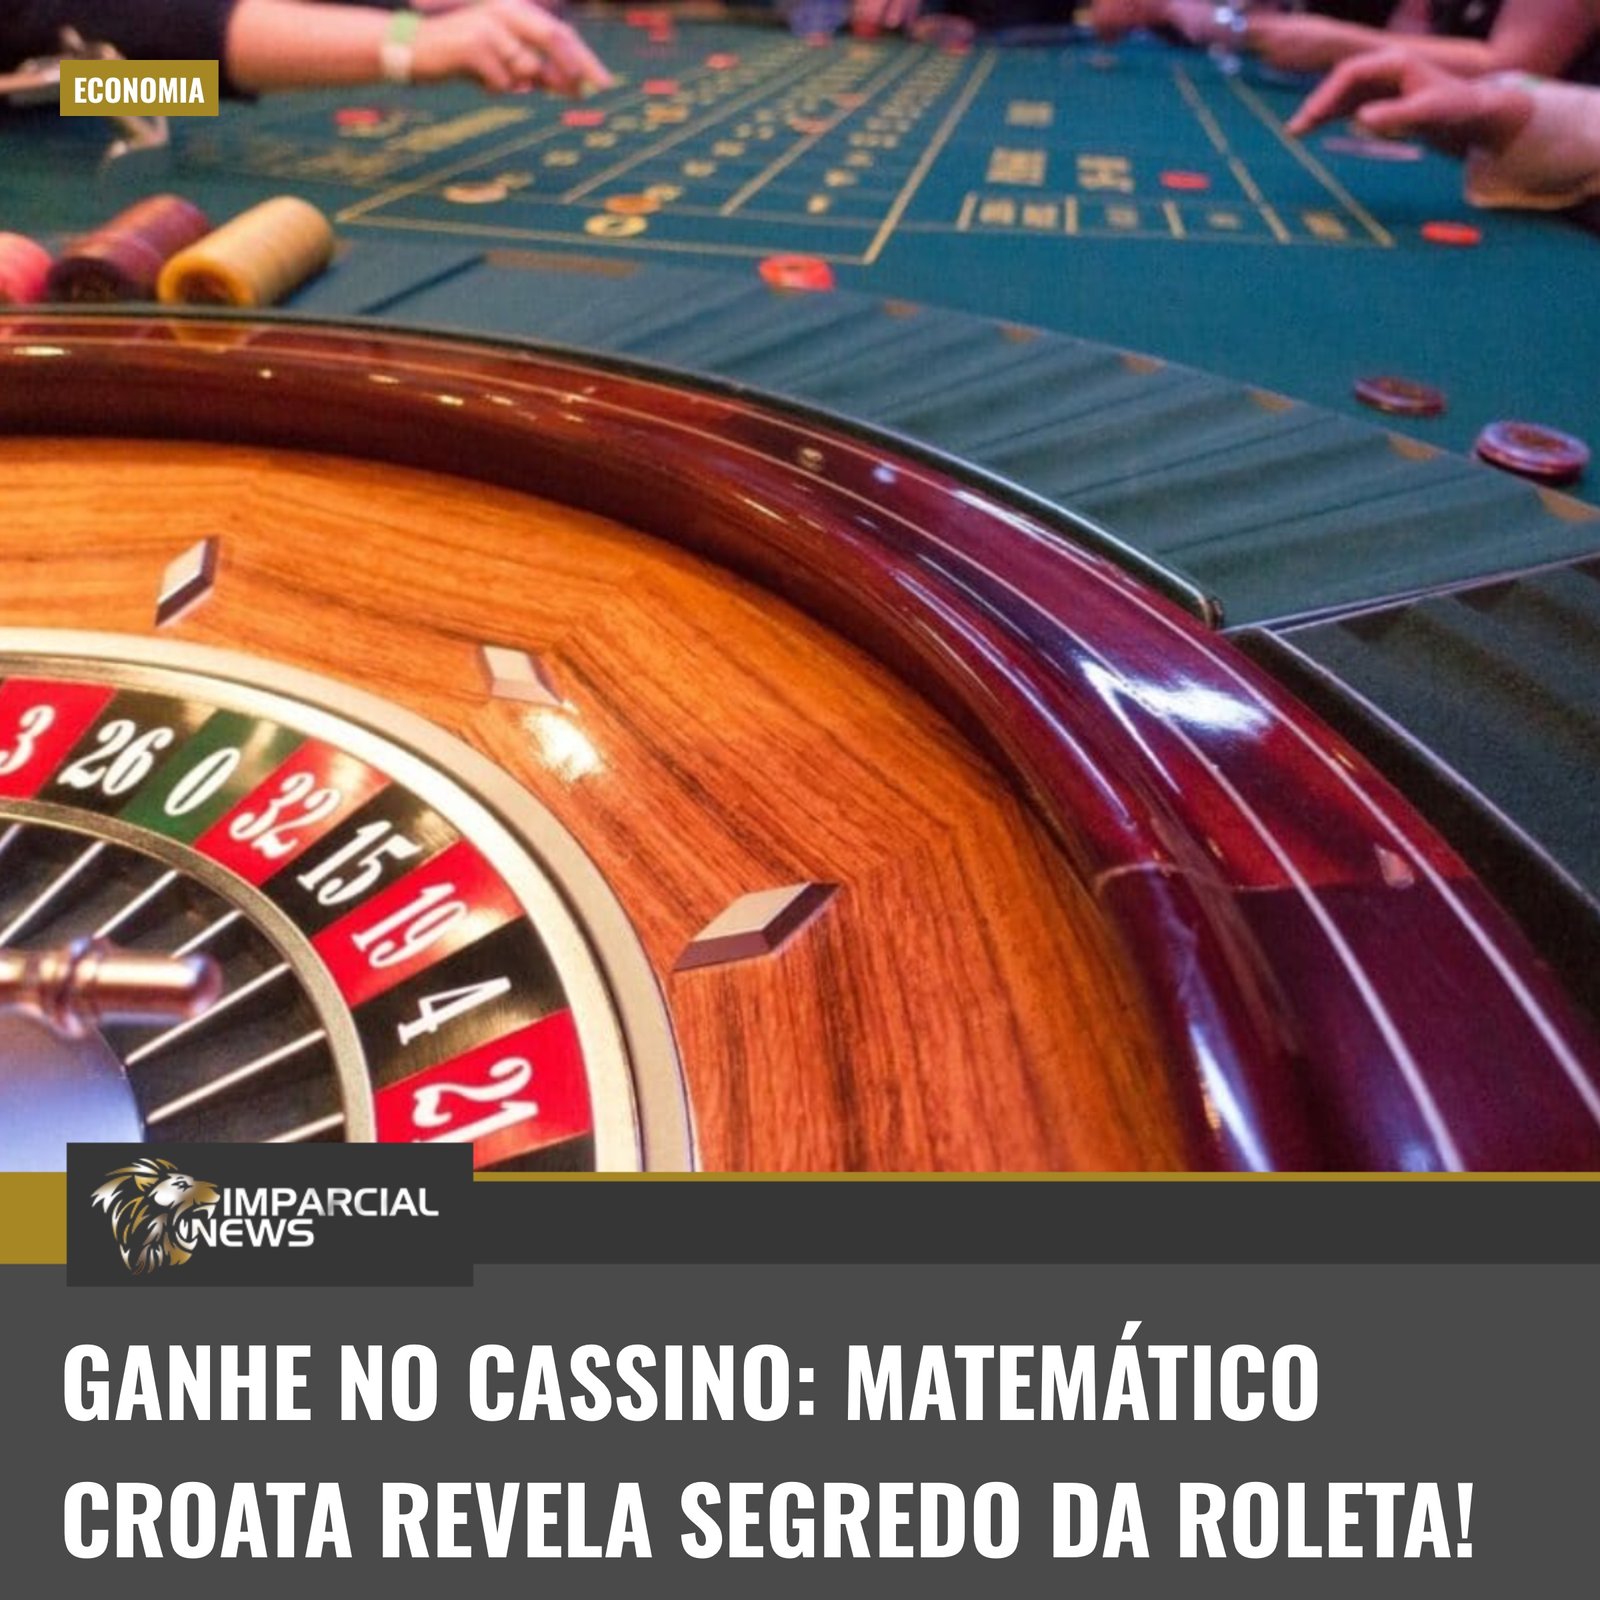  Manalo sa casino: Inihayag ng Croatian mathematician ang sikreto ng roulette!